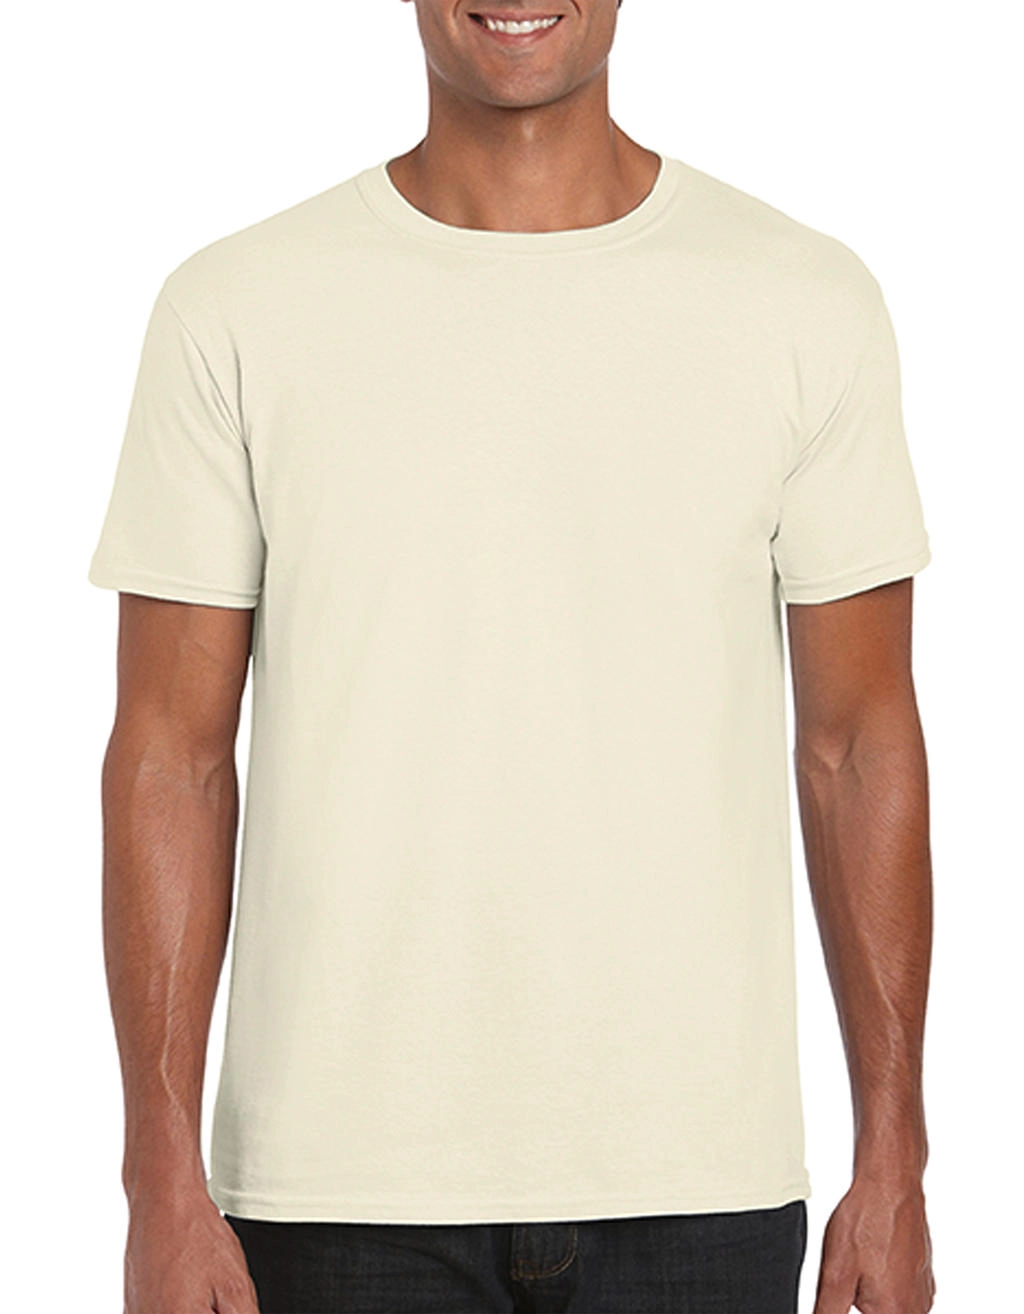 Softstyle® Ring Spun T-Shirt zum Besticken und Bedrucken in der Farbe Natural mit Ihren Logo, Schriftzug oder Motiv.